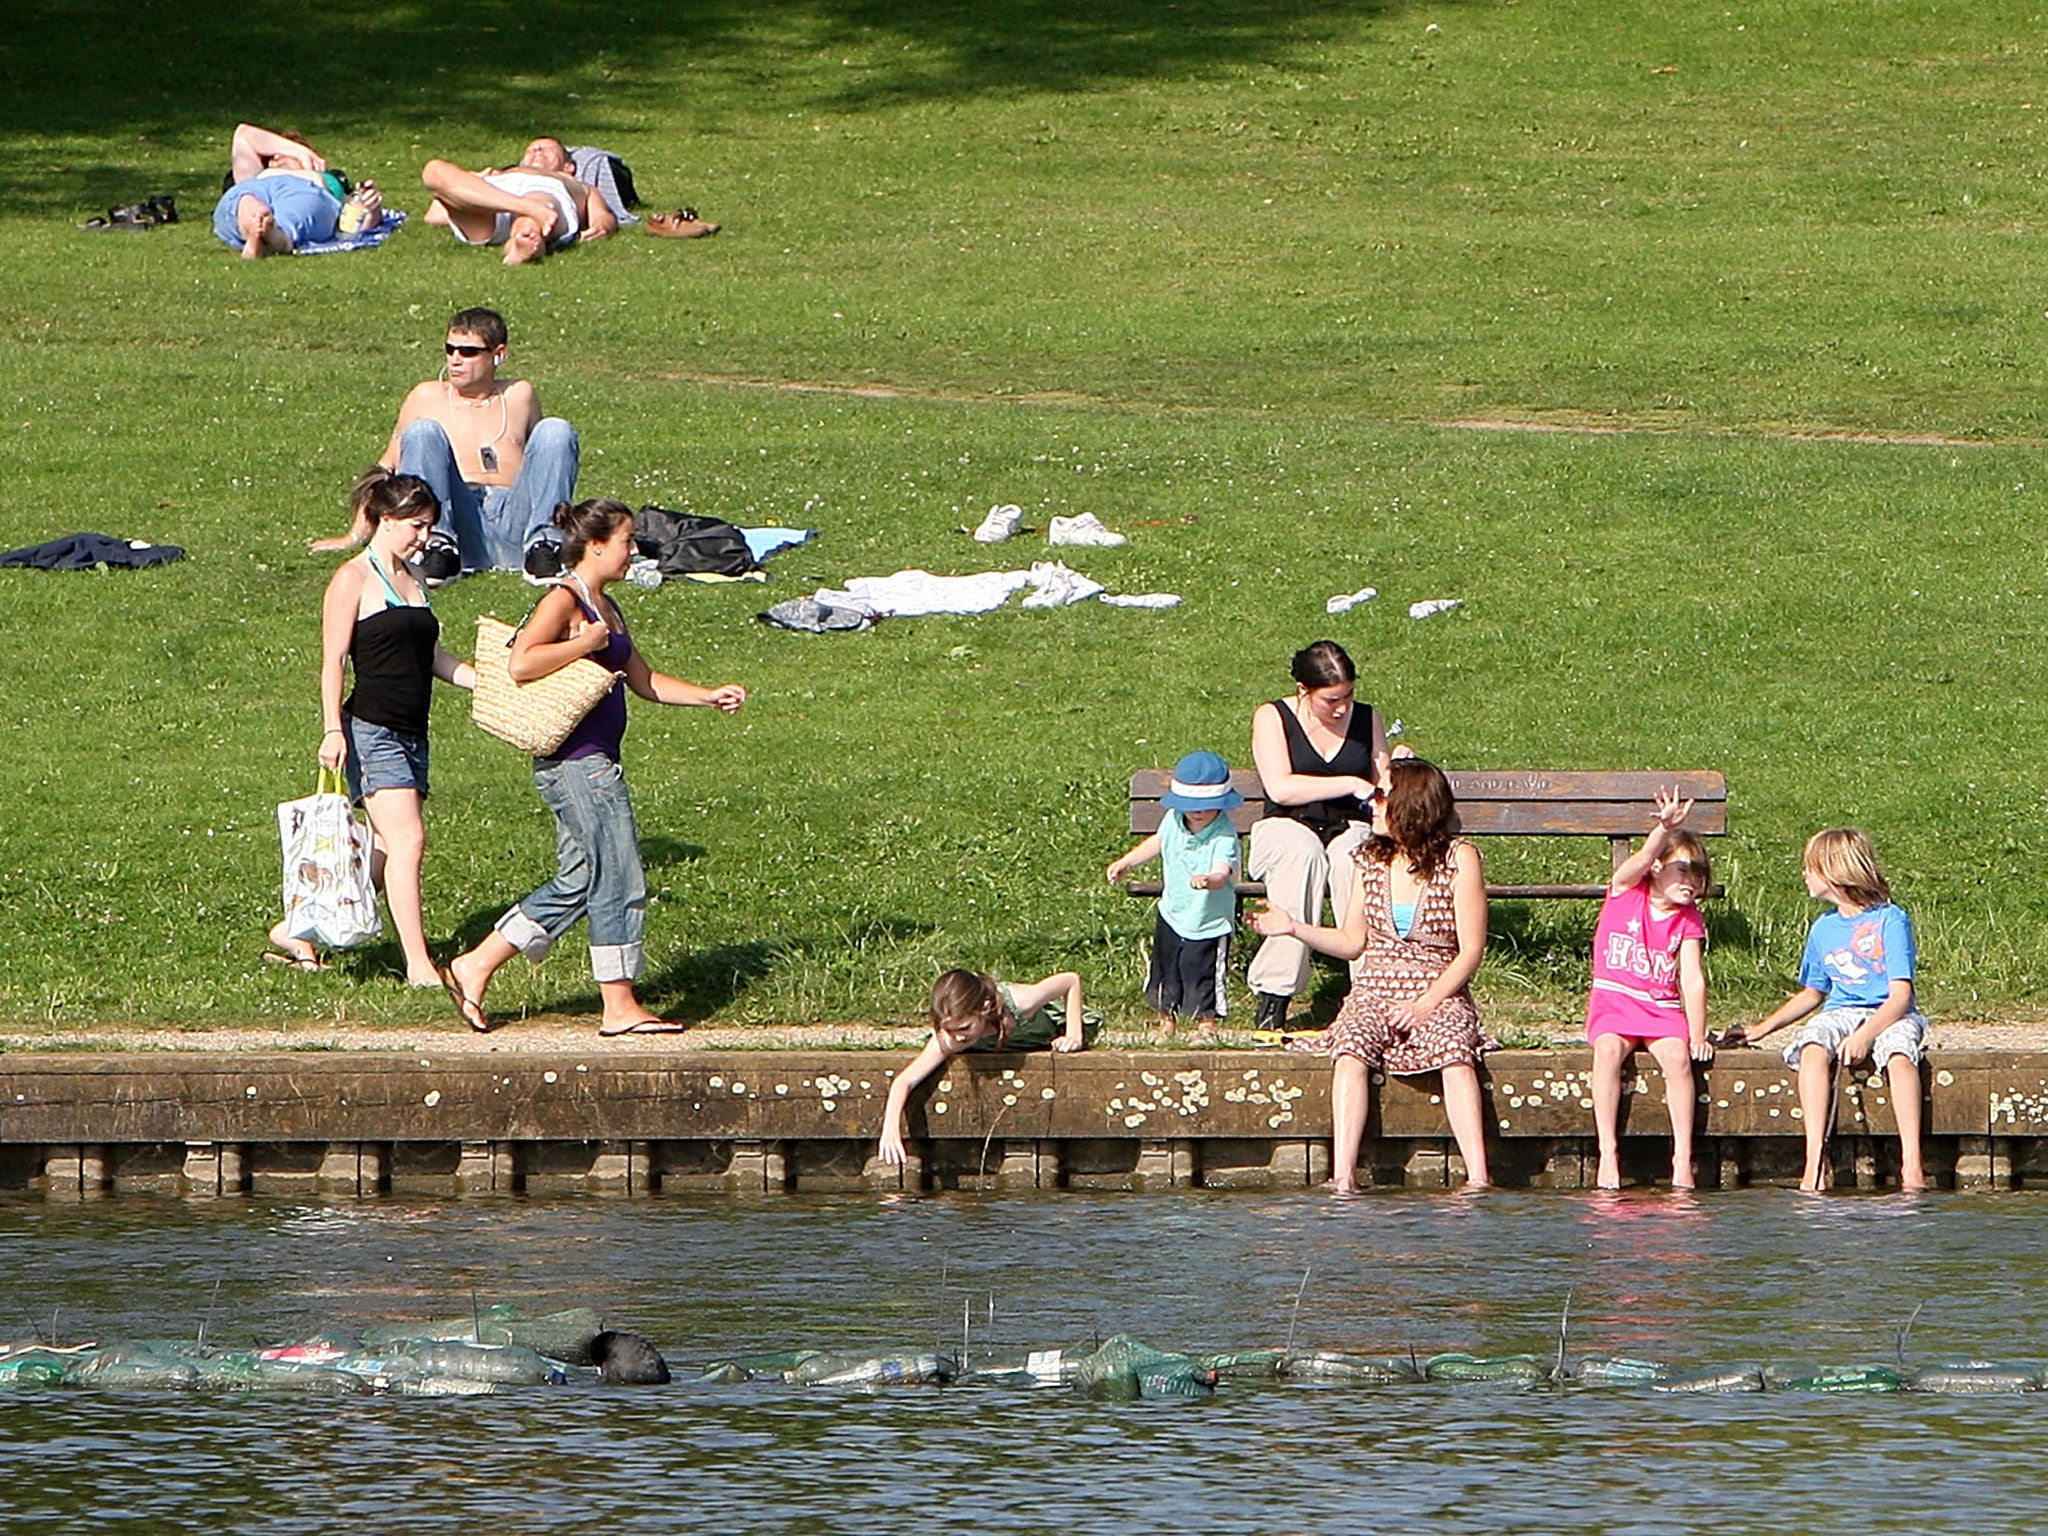 People sunbathe on Hampstead Heath on July 24, 2008 in London, England